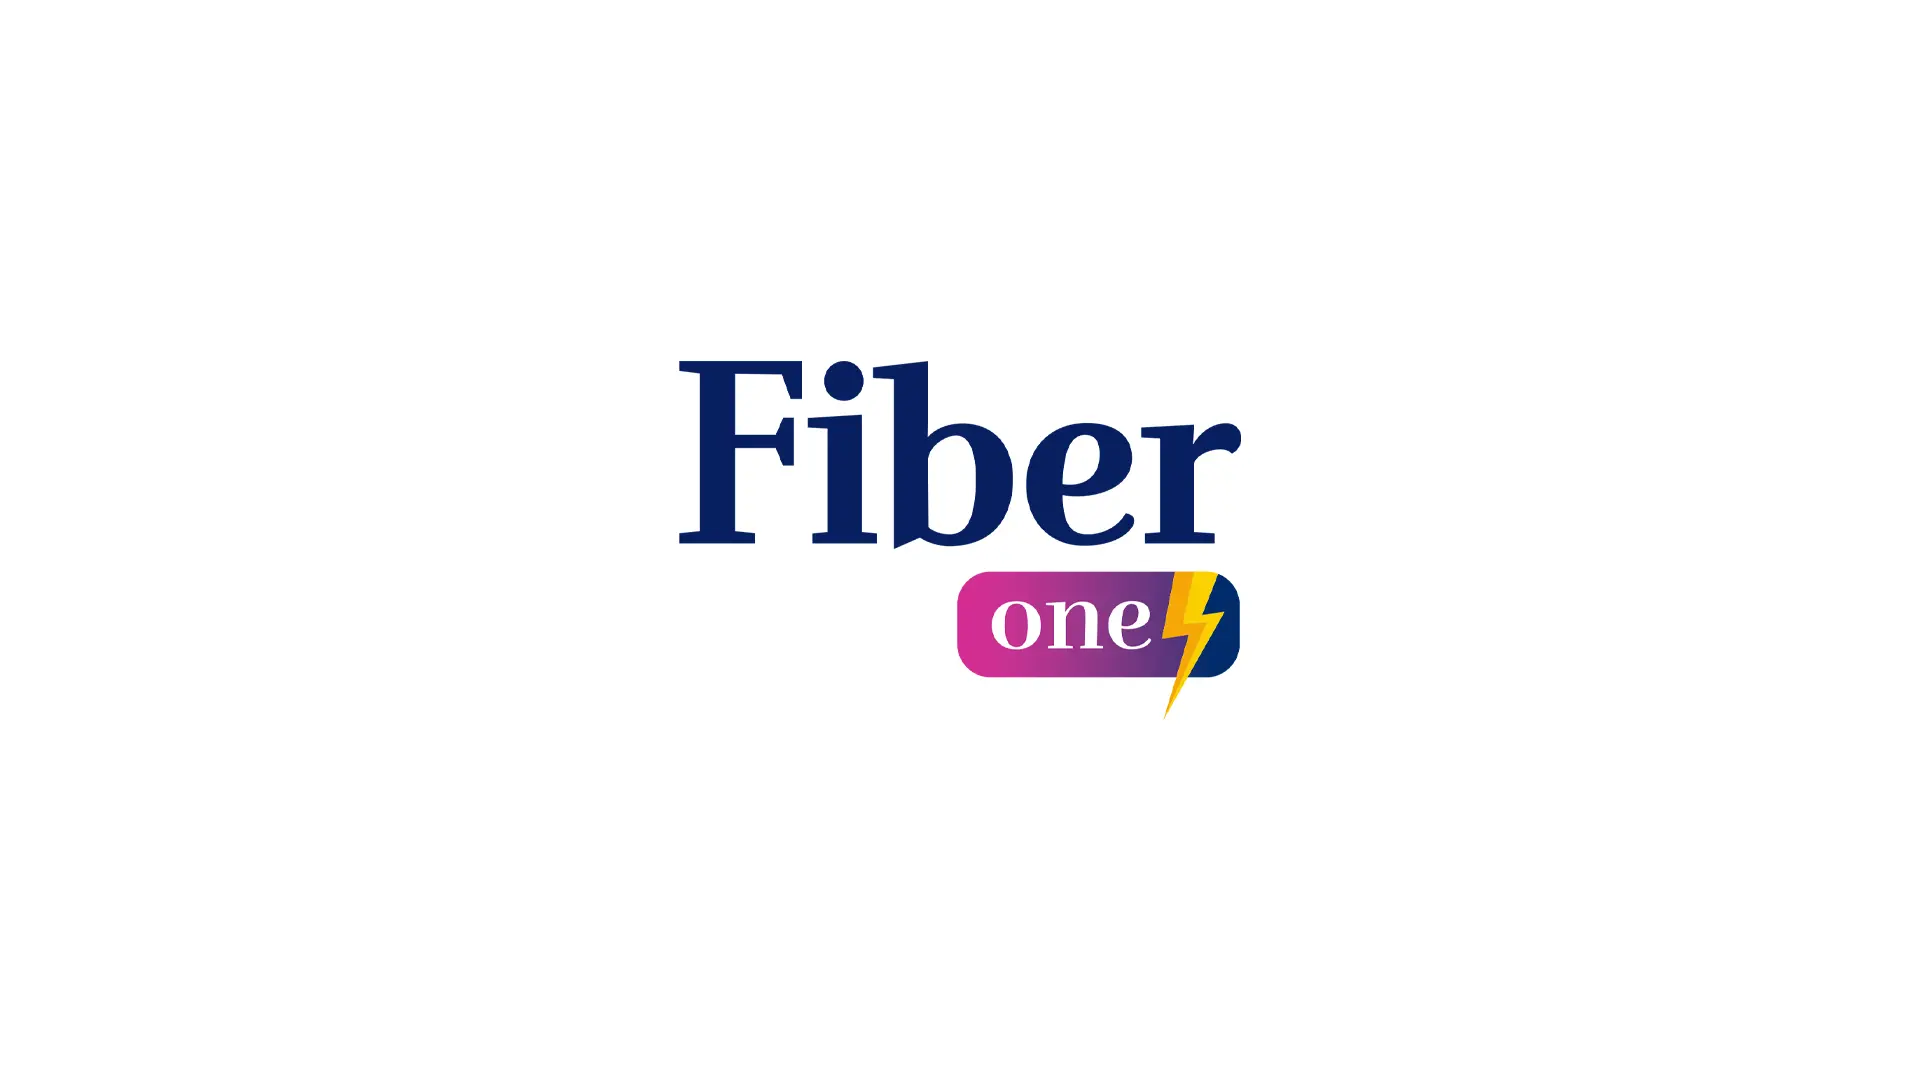 fiber one cover